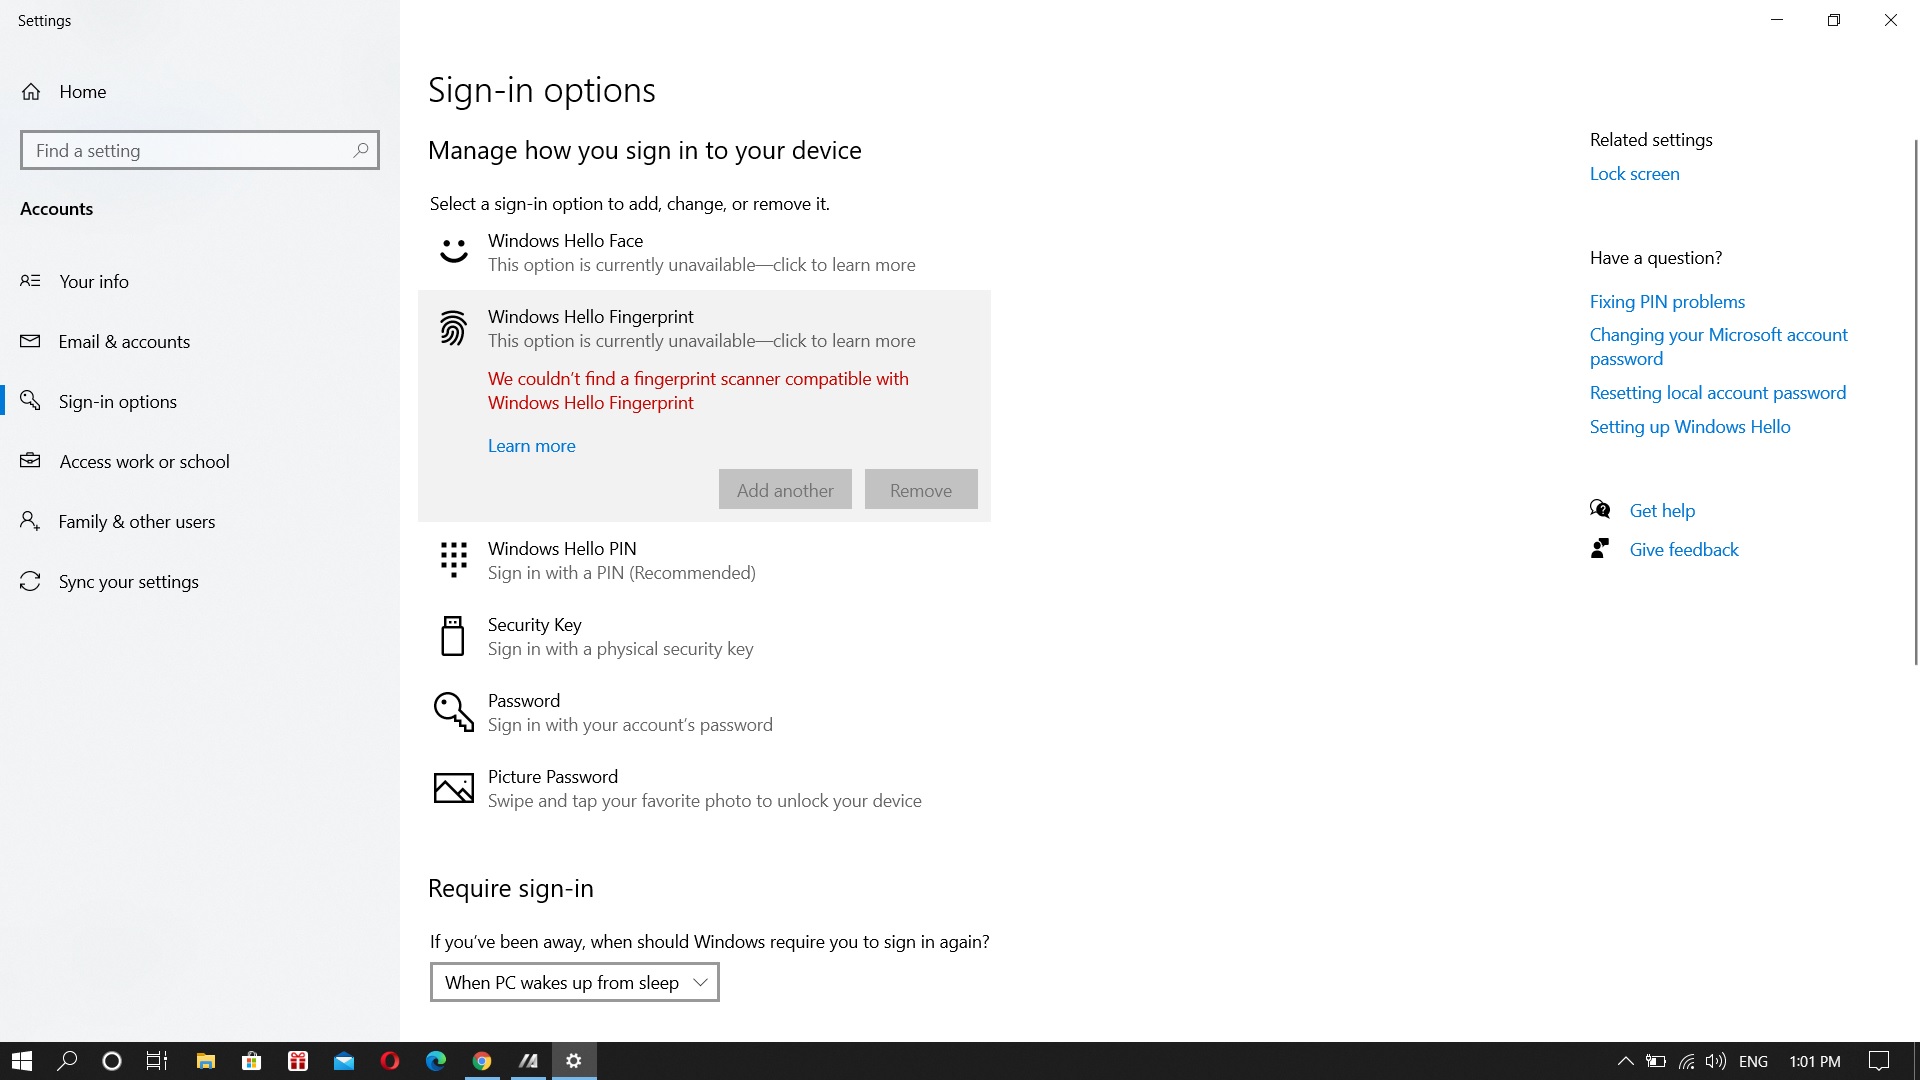 windows hello sign in fingerprint is not working 9519612a-a123-433b-9e92-f6dce053b44f?upload=true.jpg